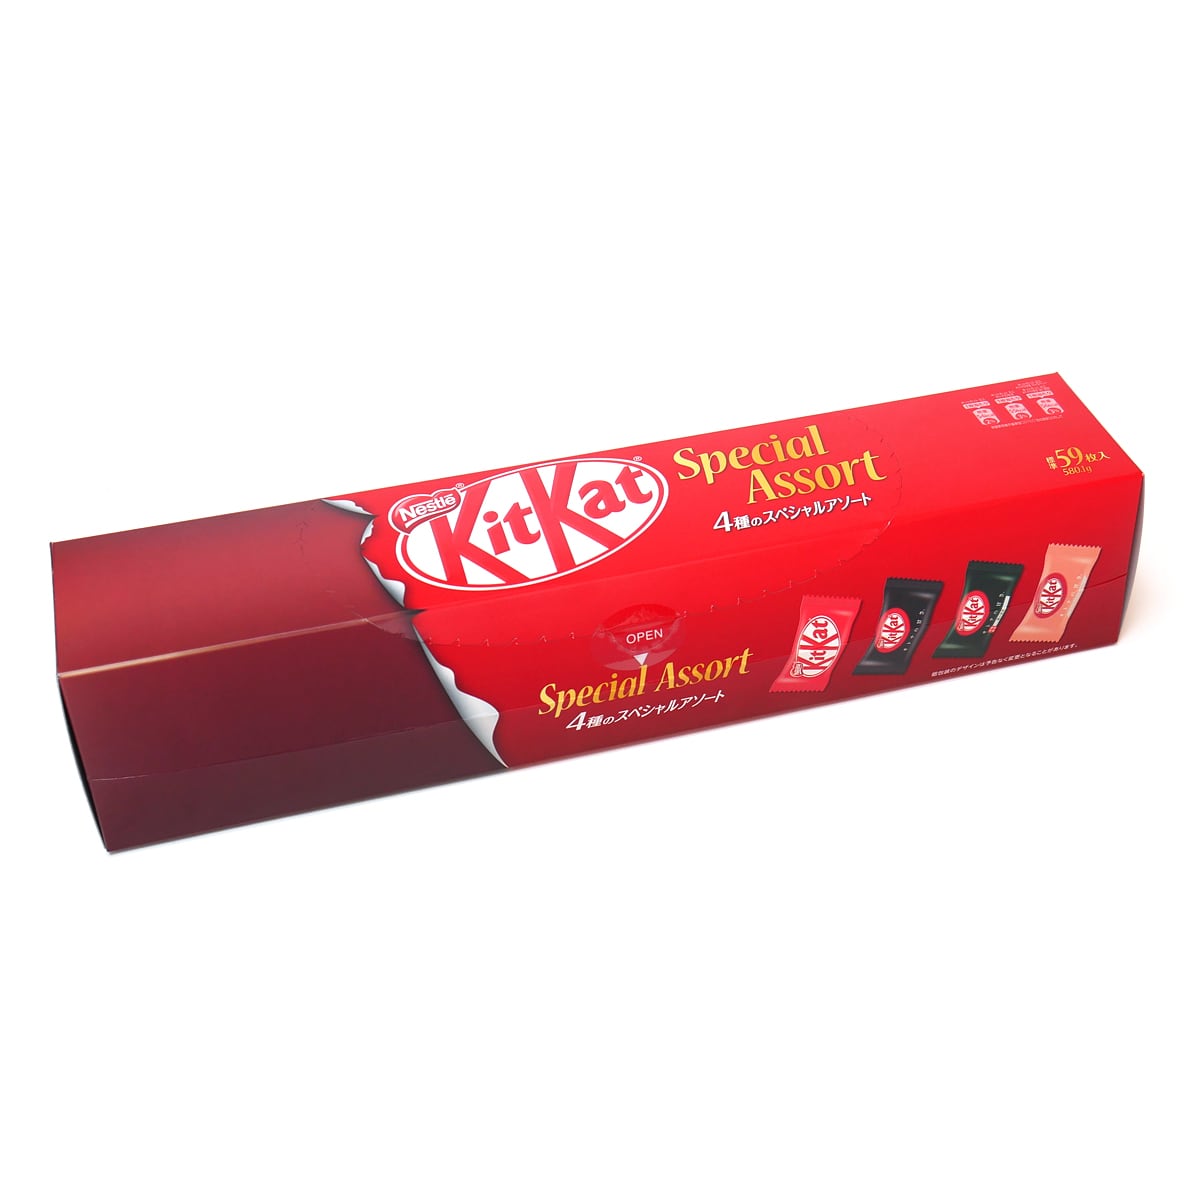 【予約中！】 ネスレ キットカット スペシャルアソート 5種類入り 583g kitkat チョコレート wonder-eyes.co.jp